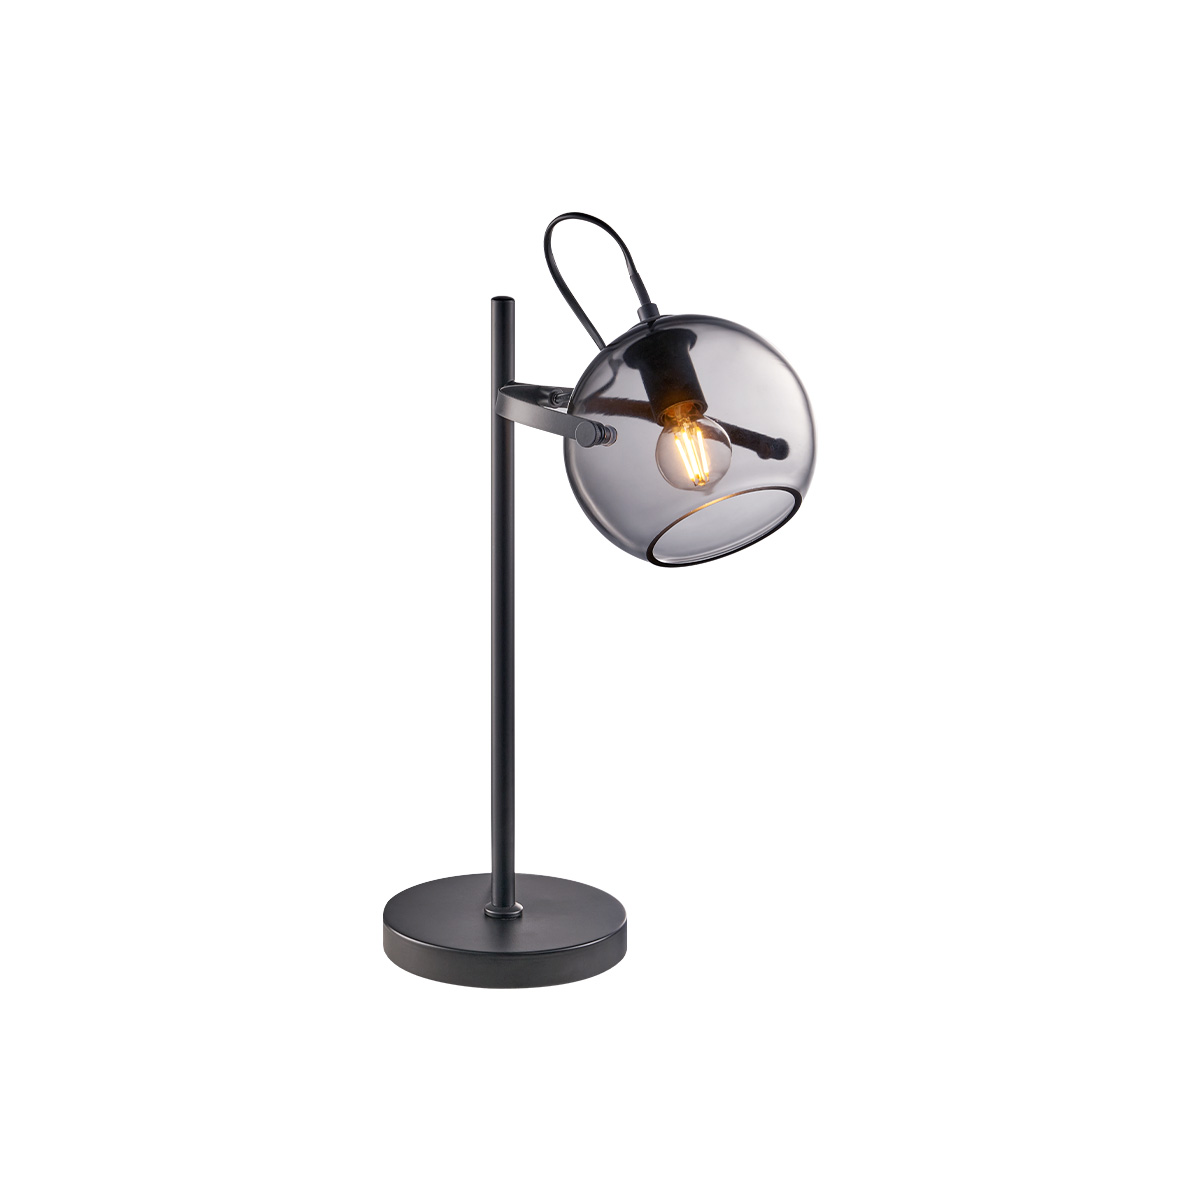 Tangla lighting - TLT7408-01SB - Table lamp 1 Light - metal + glass - sand black + smoke - night - E14